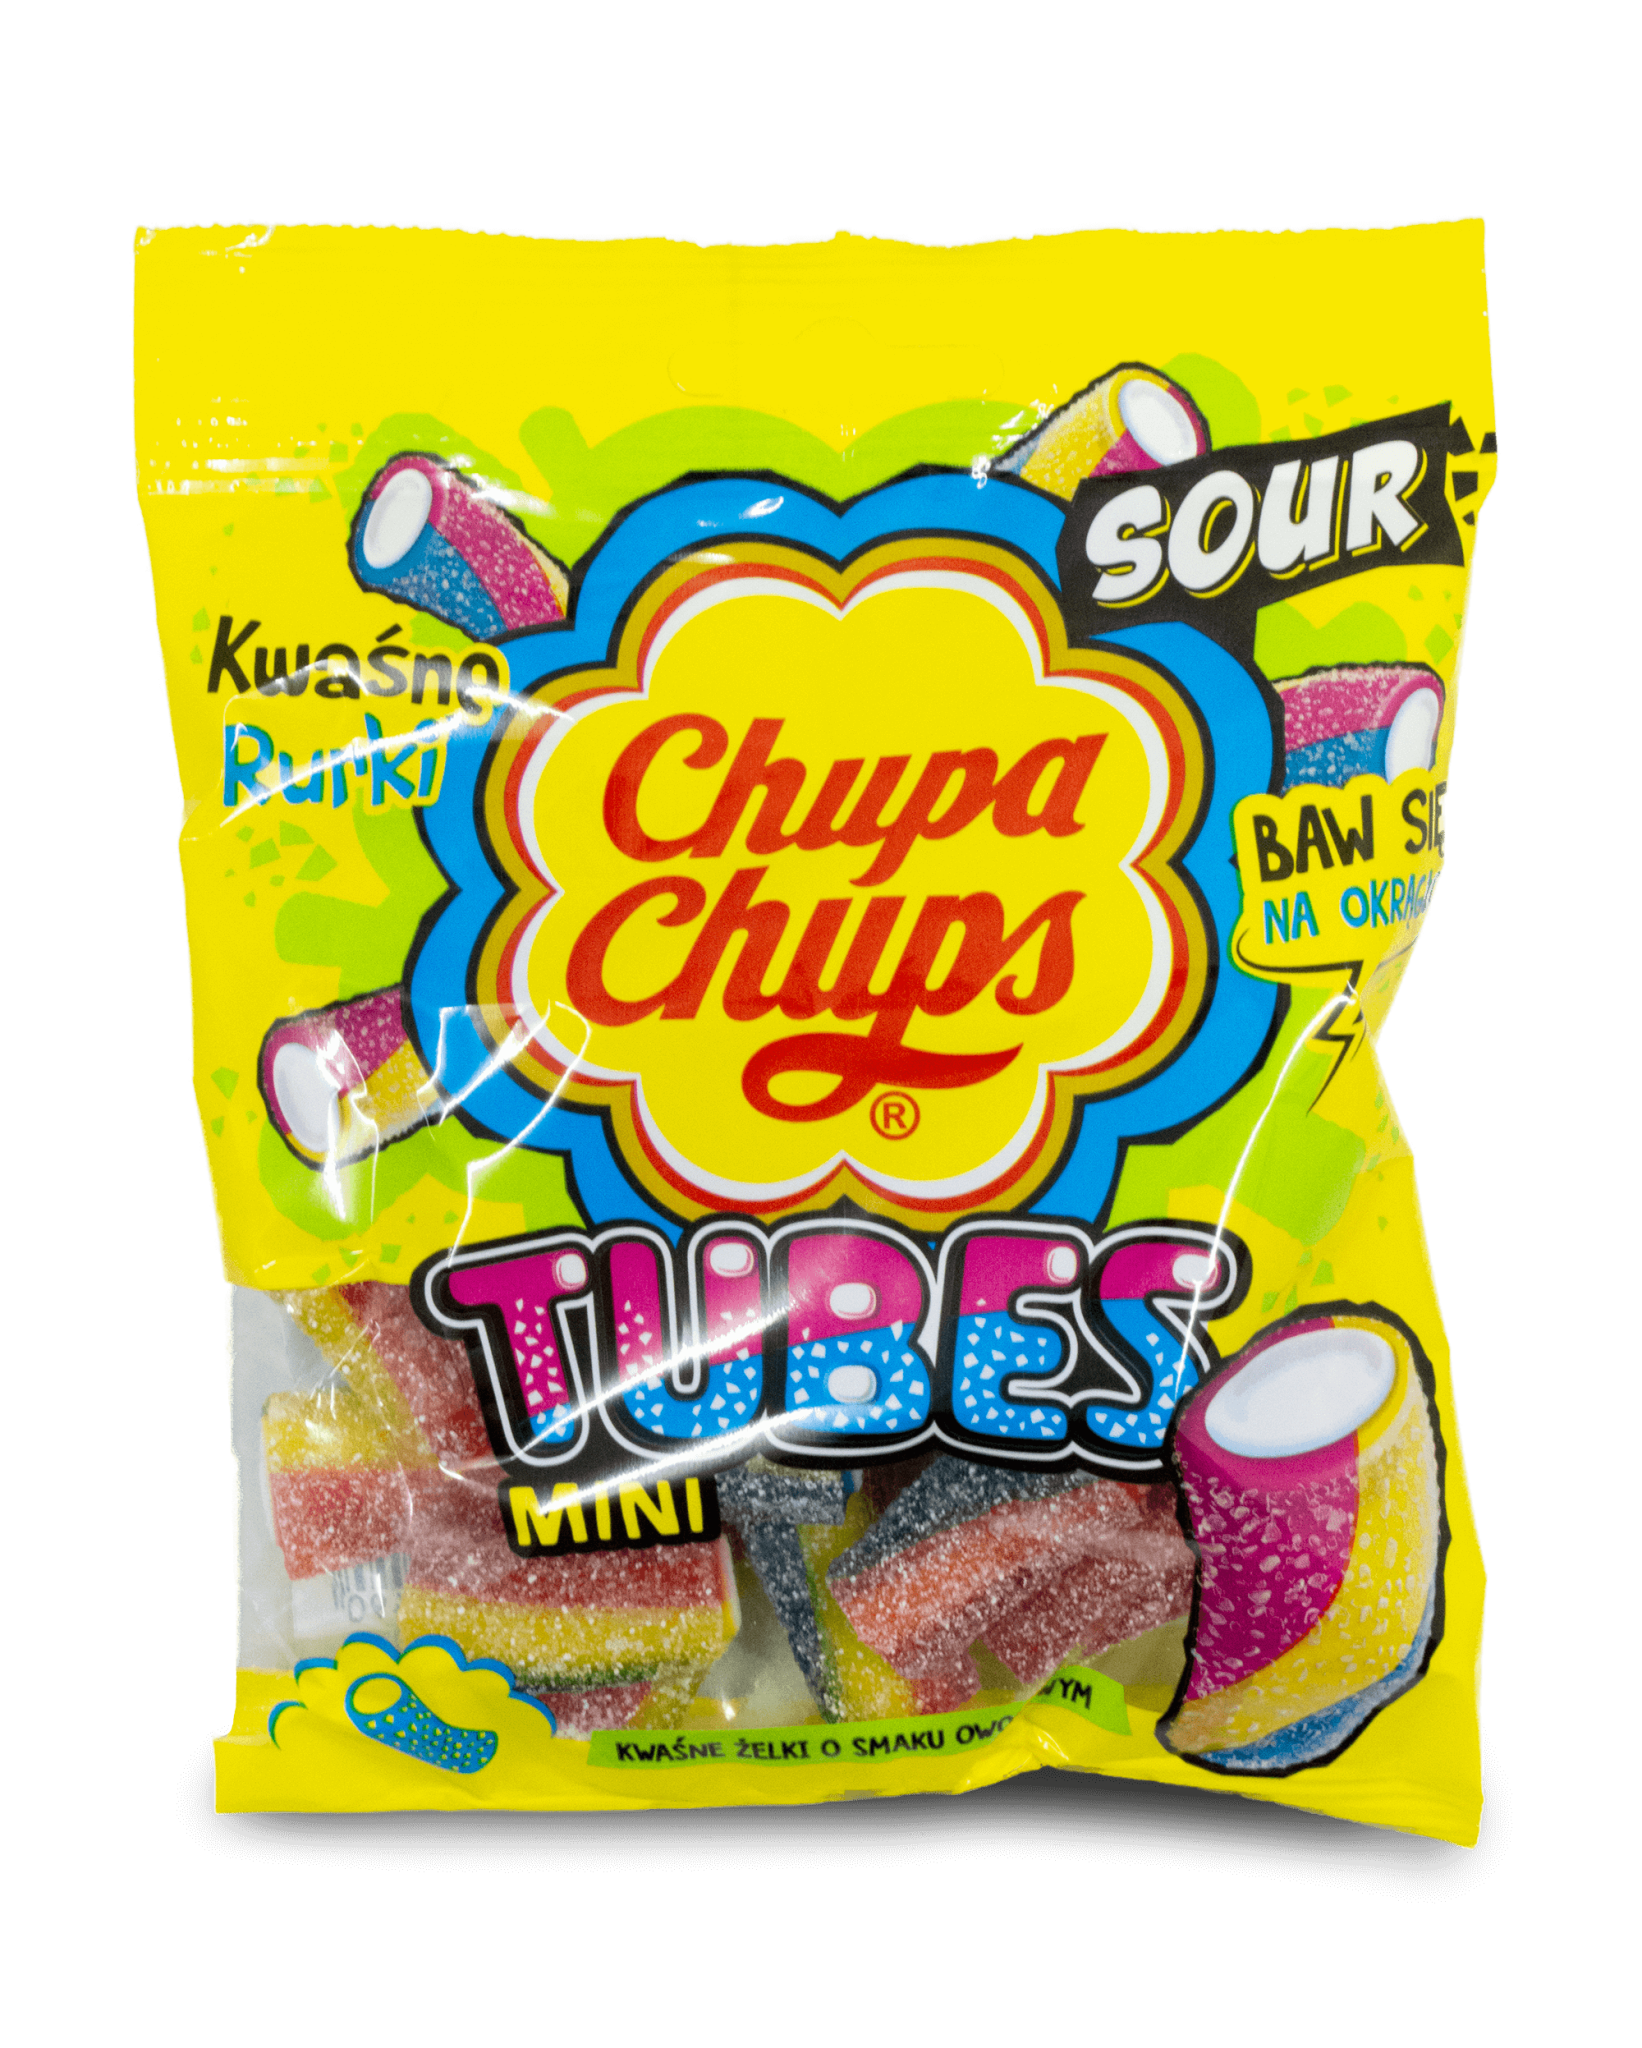 Chupa Chups Balonowa - Pop's America